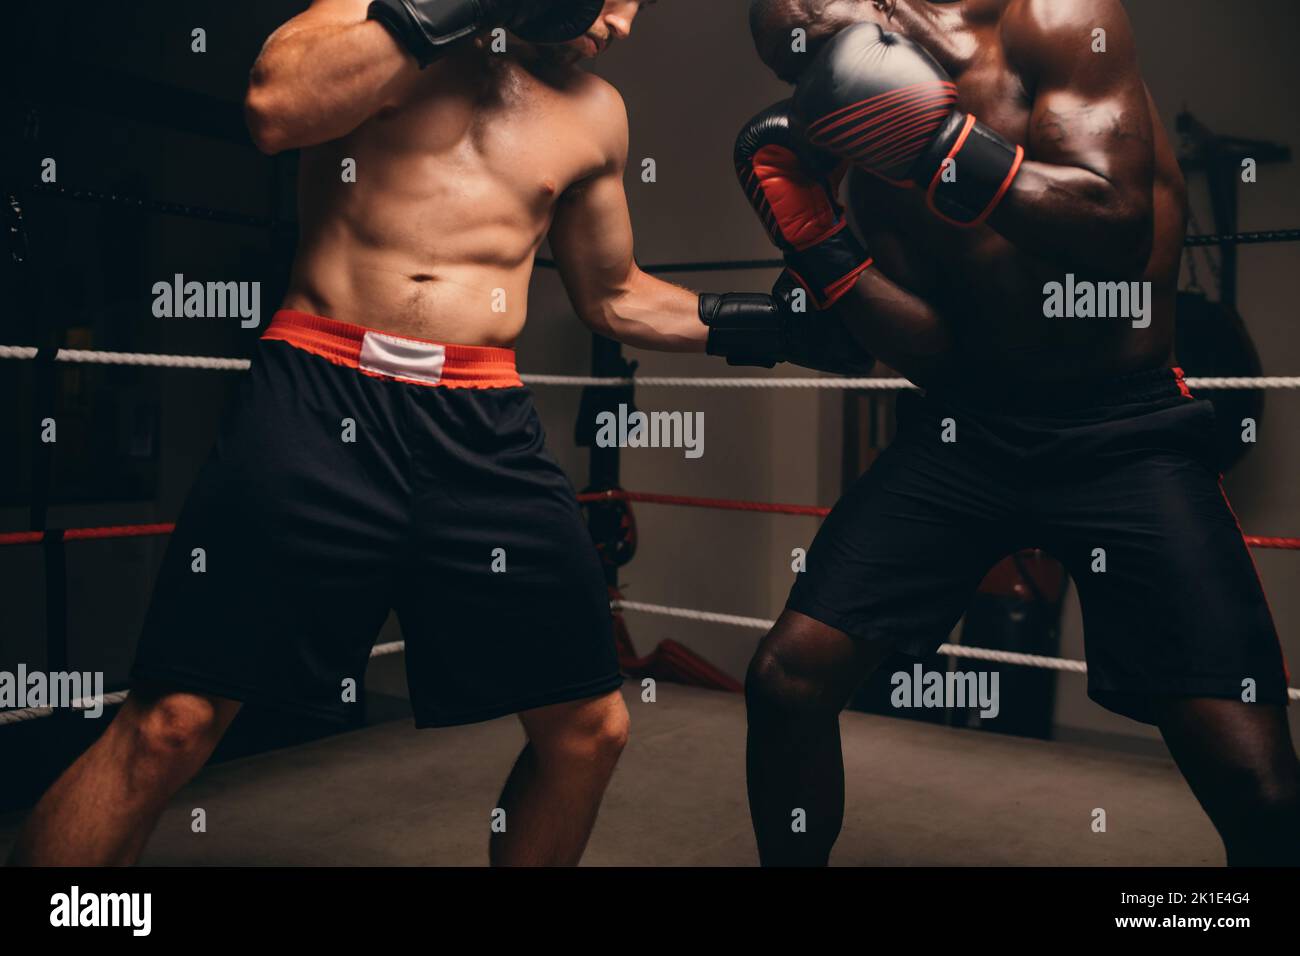 Joven boxeador recibiendo un golpe en el estómago durante una pelea con su oponente. Dos boxeadores jóvenes que juegan un partido en un ring de boxeo. Foto de stock